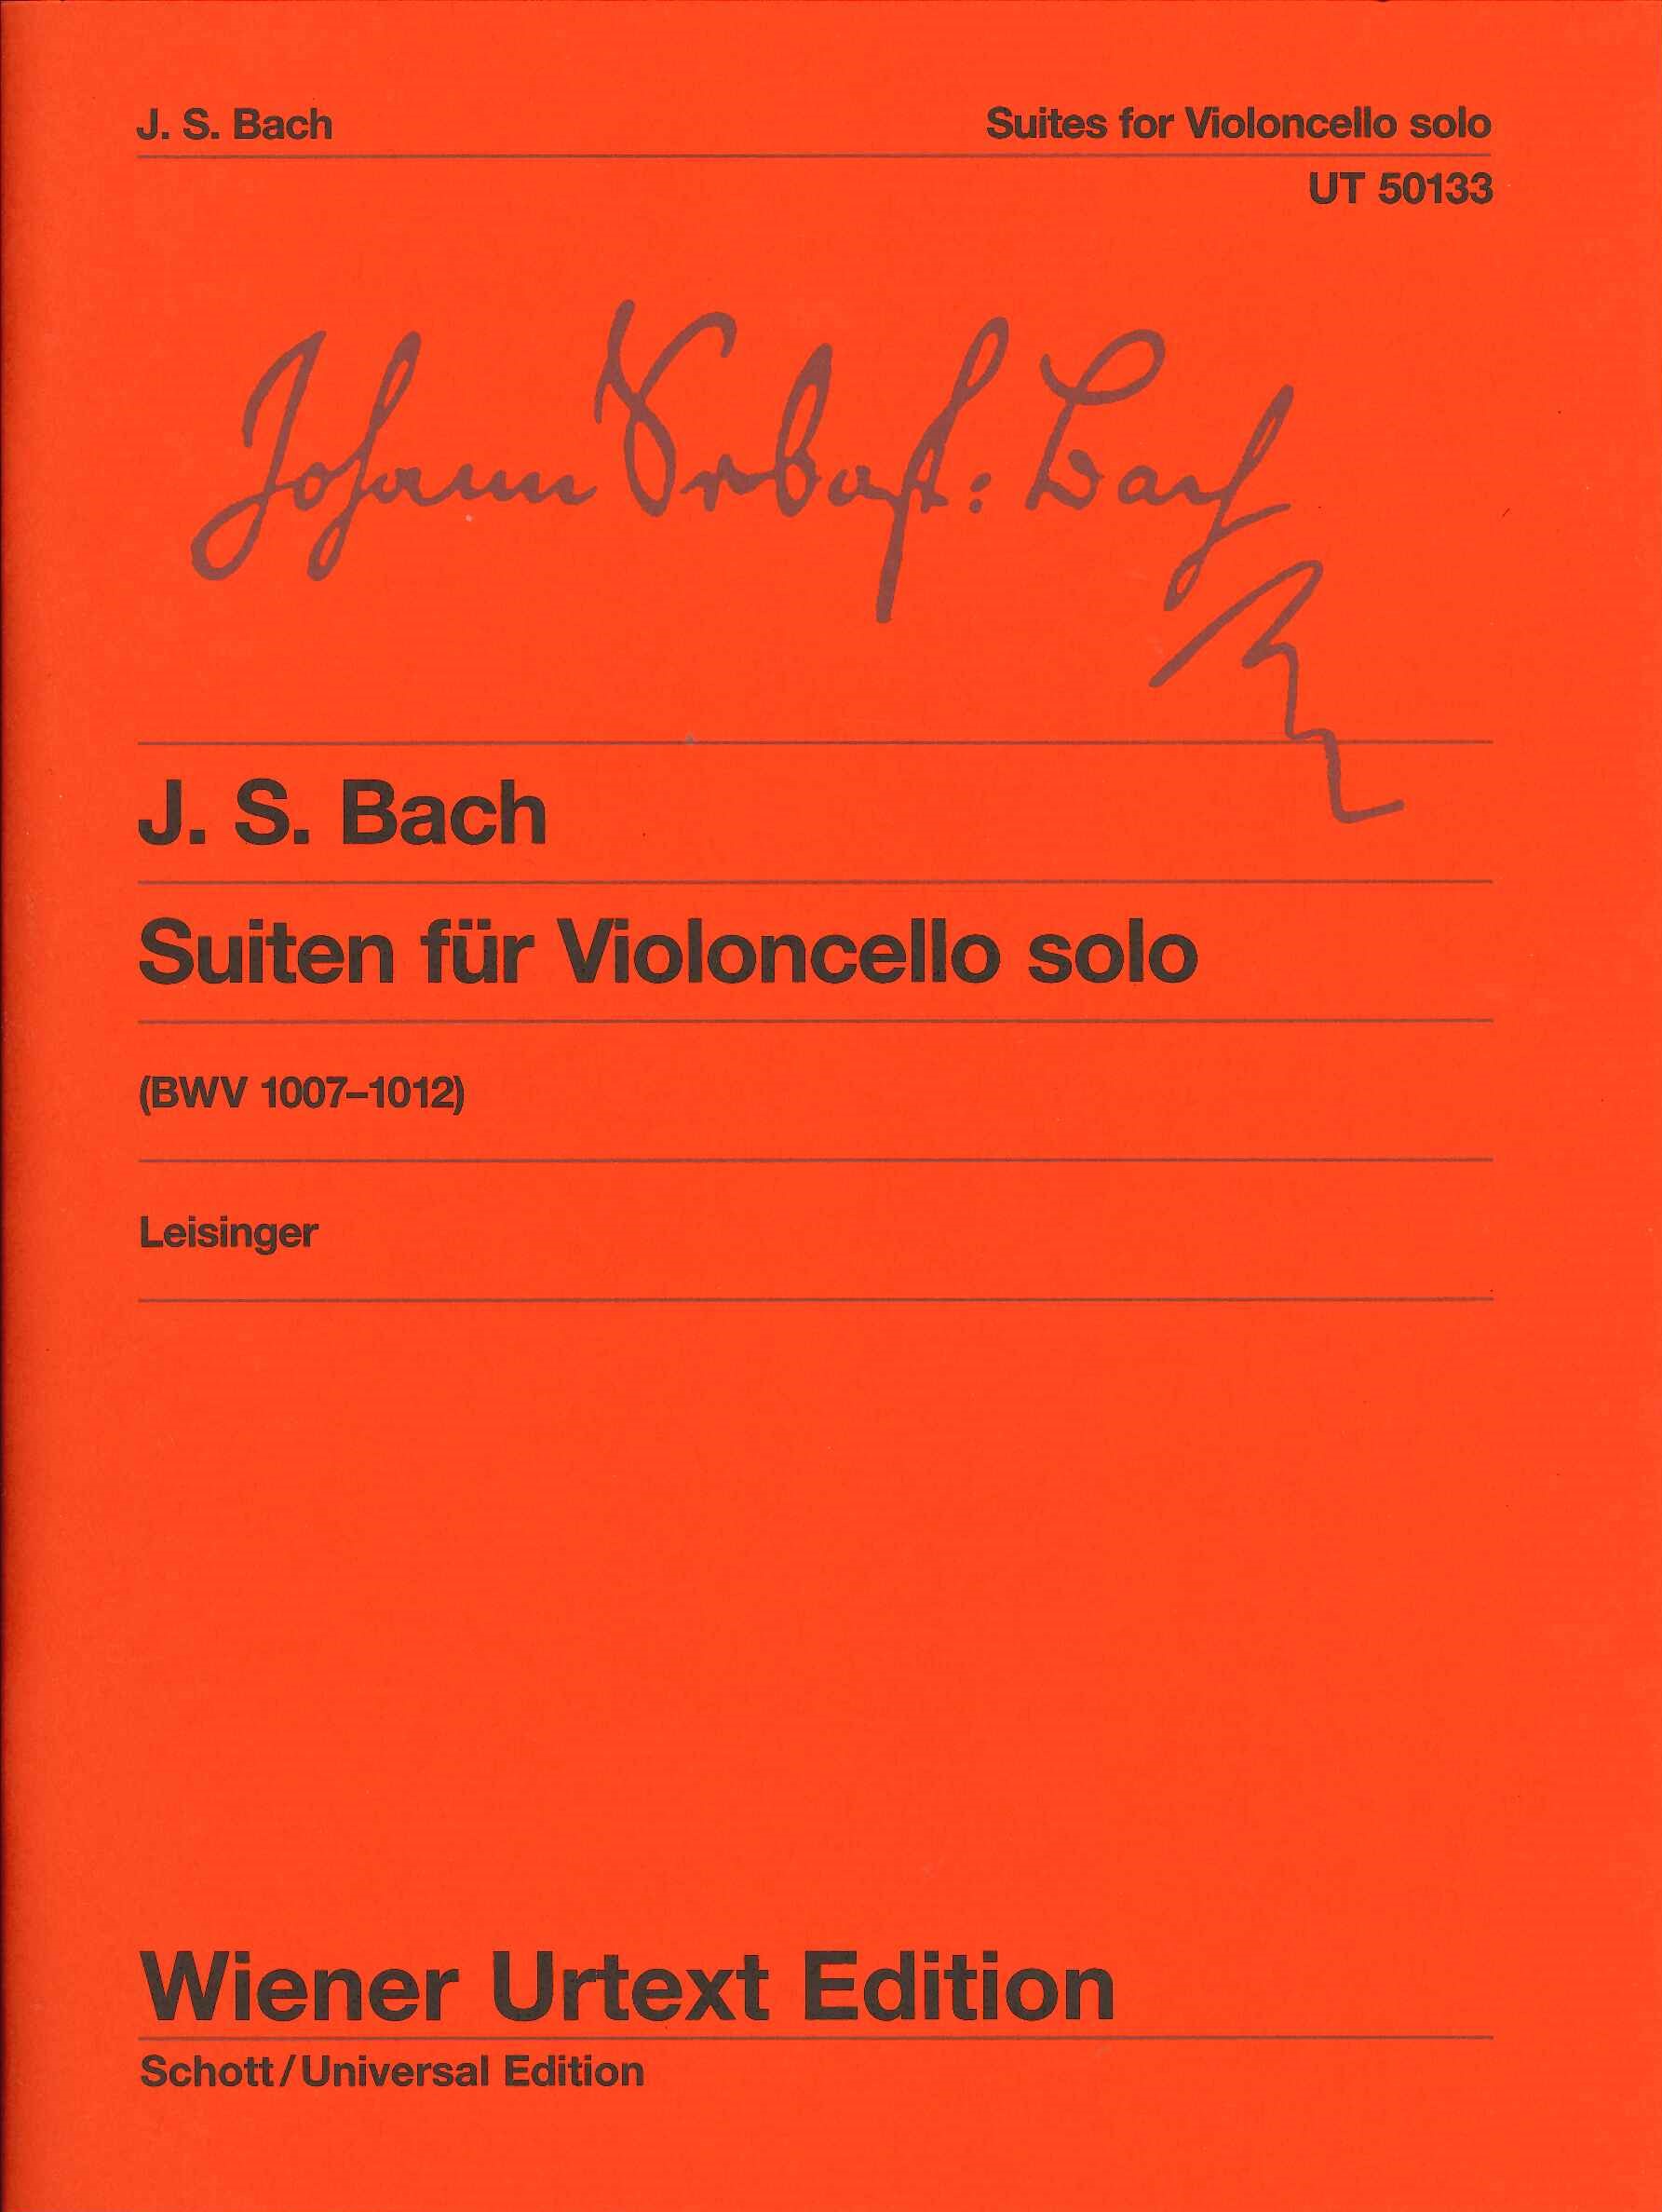 S - 6 Suiten BWV 1007-1012 Bach J Noten für Violoncello solo 9054 